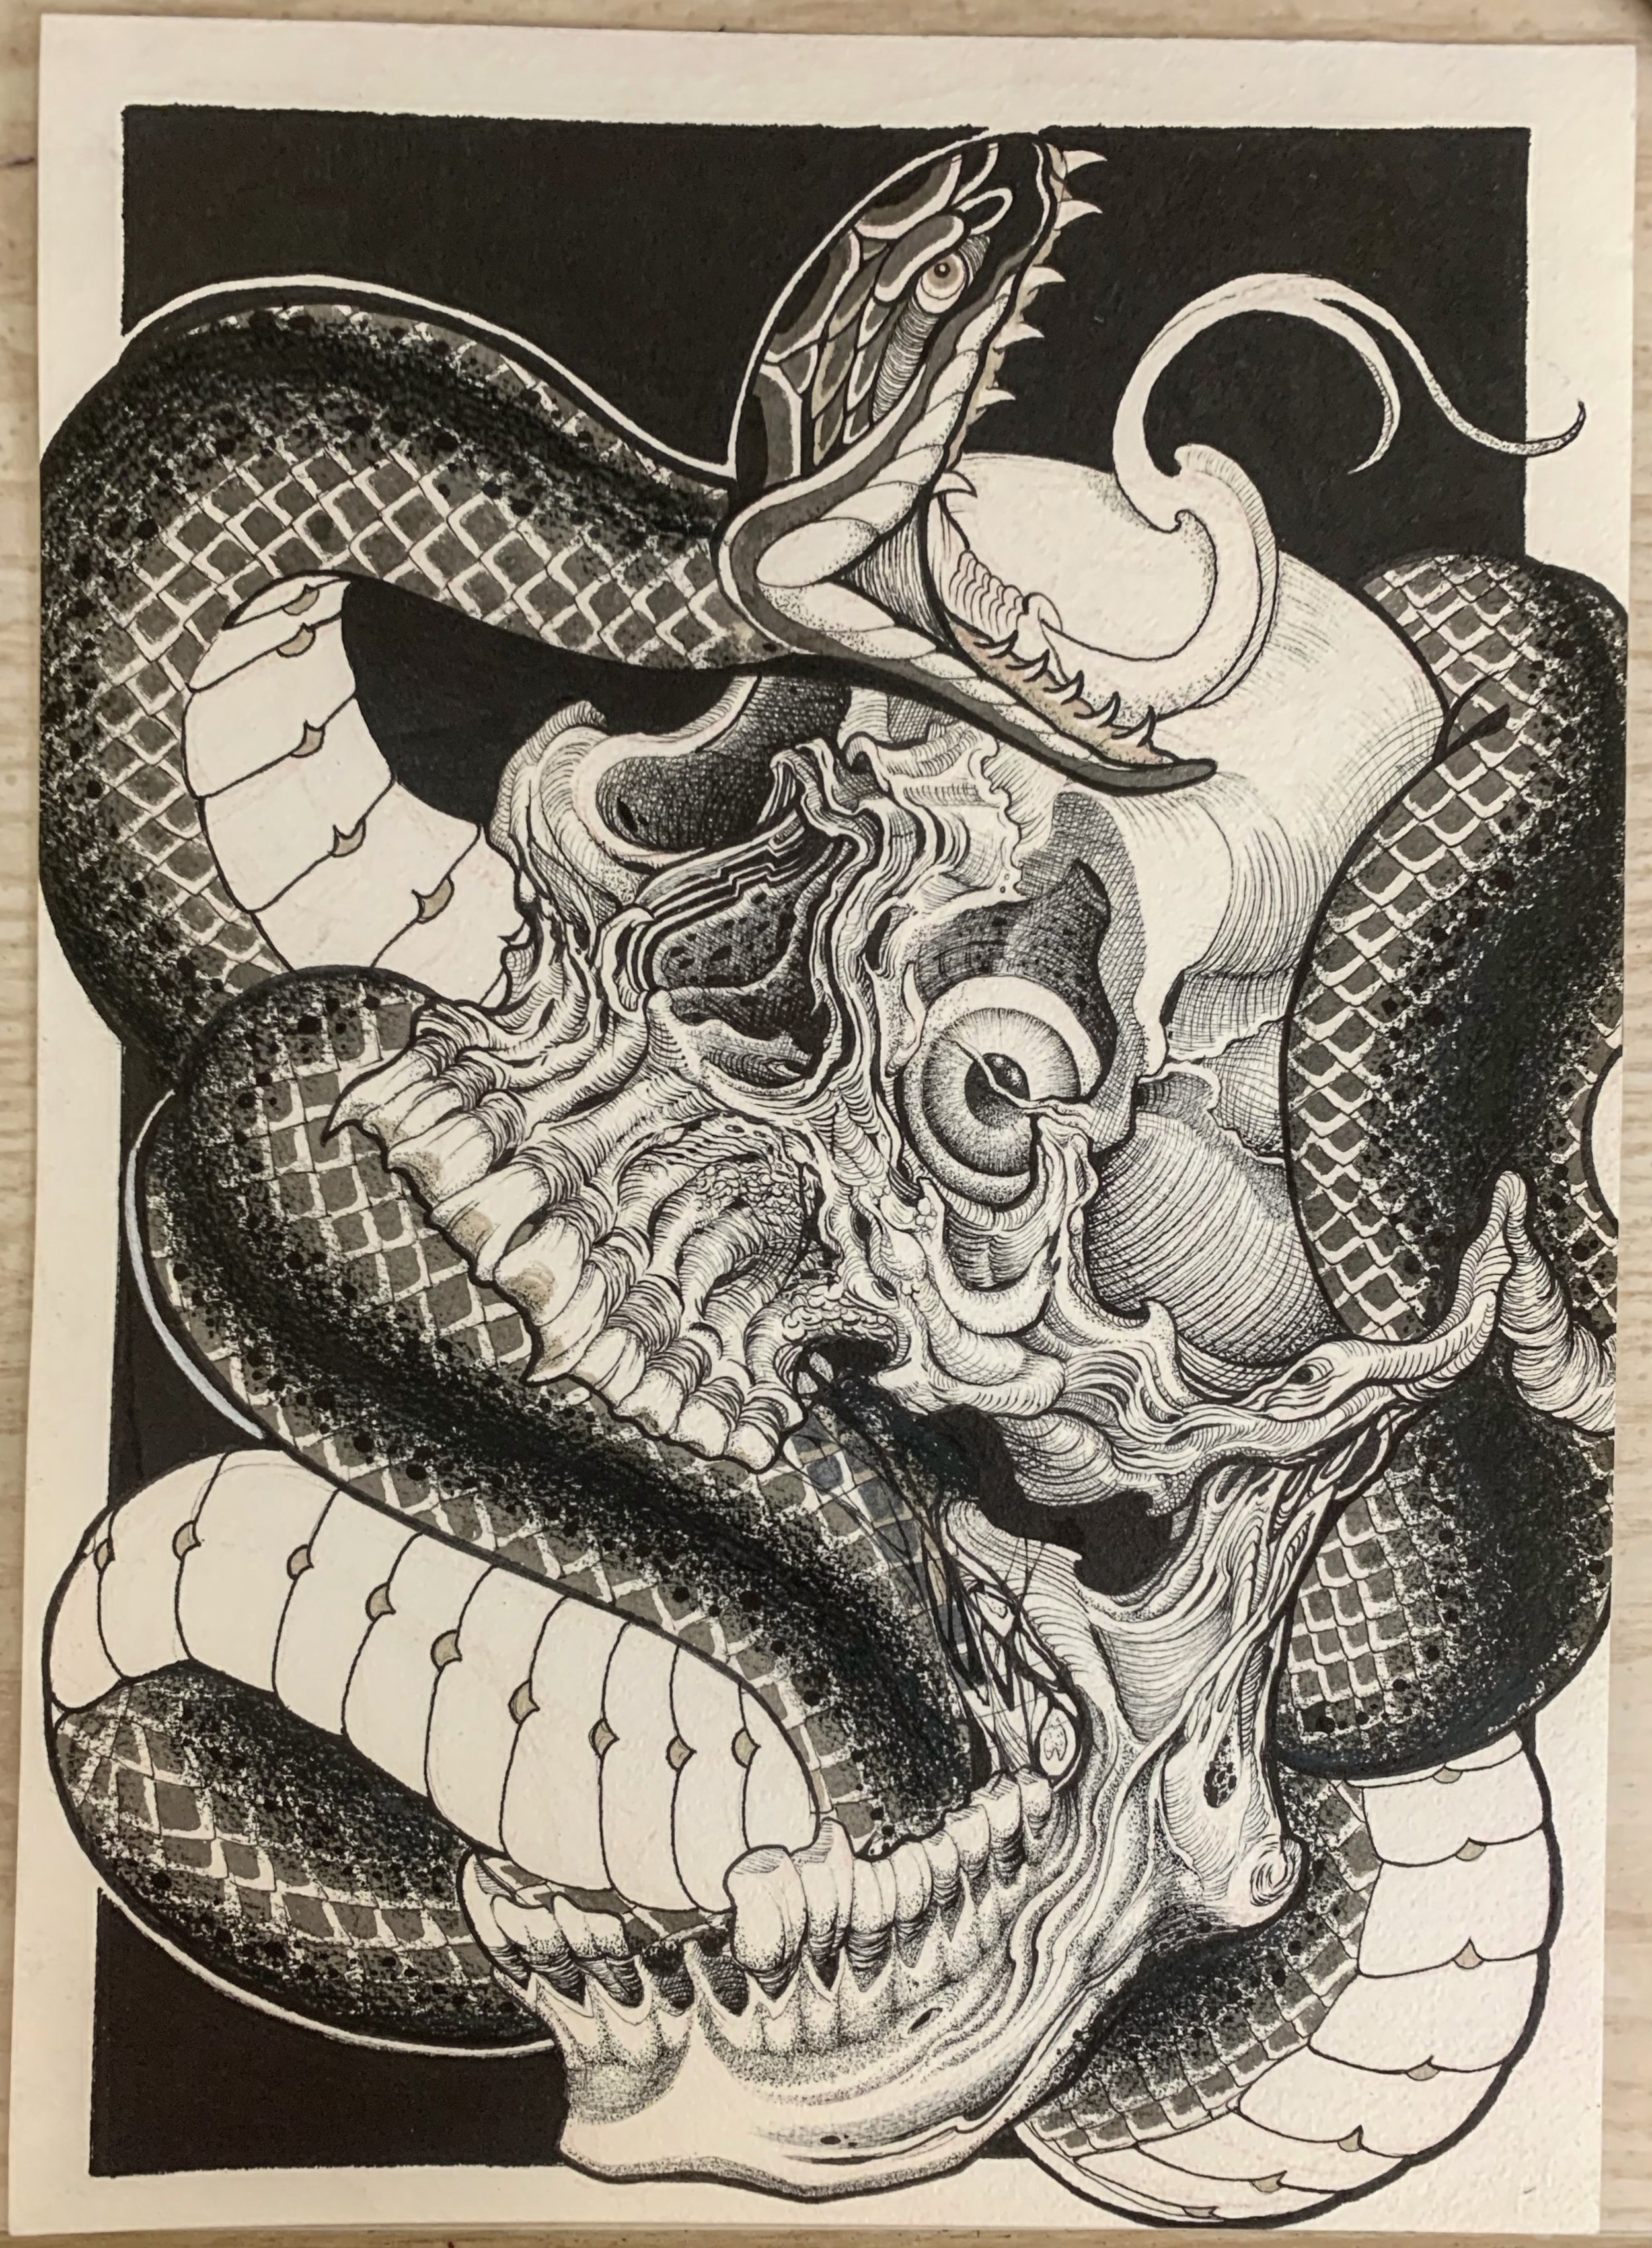 Snake and Skull Artwork